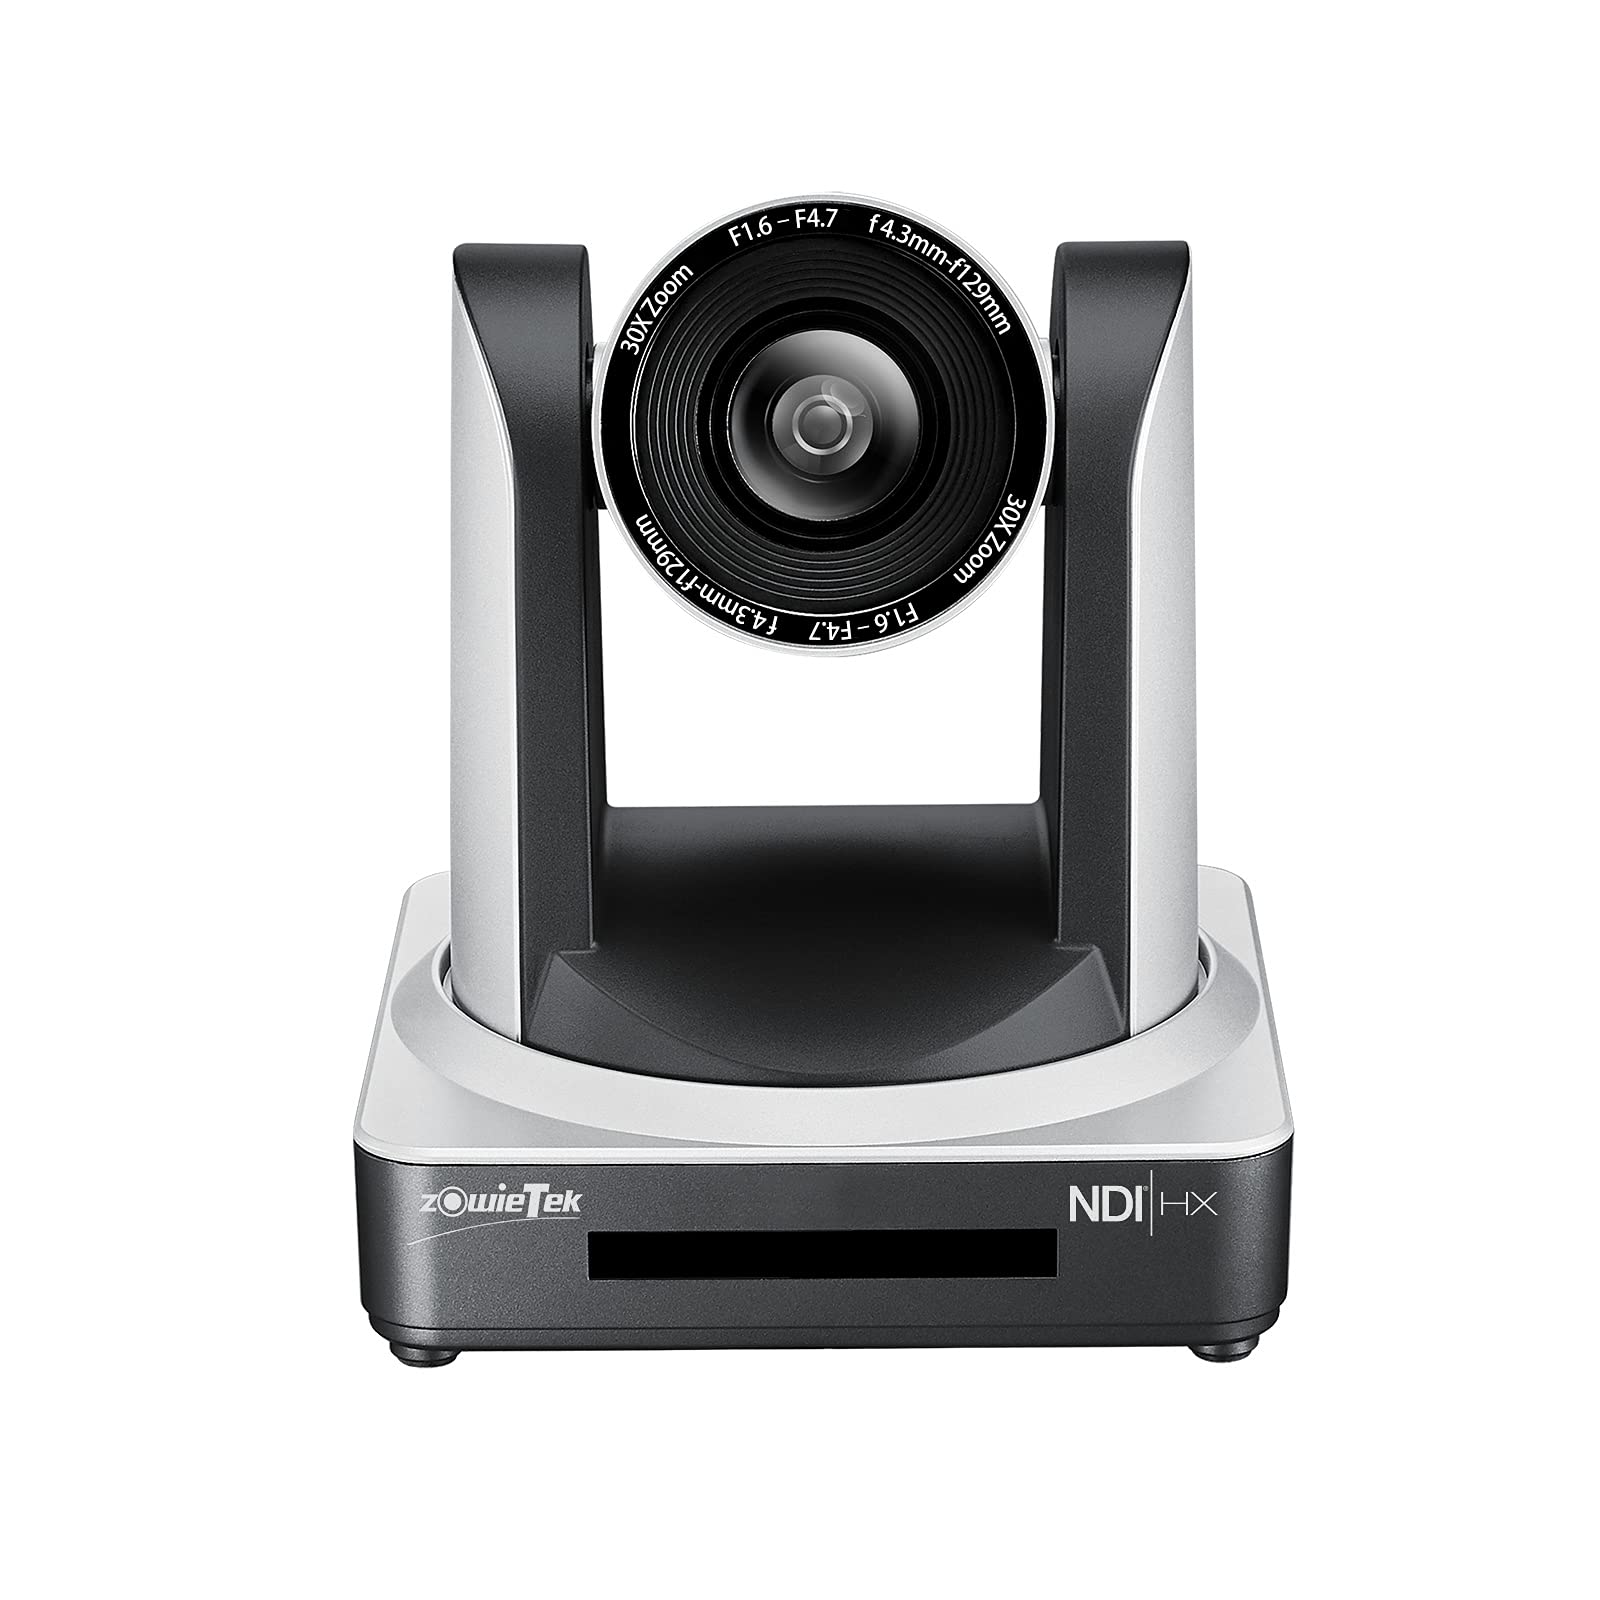 zowietek PTZ Streaming Camera with NDI | HX + PoE Optics 30X Church IP Camera with Simultaneous HDMI and 3G-SDI Outputs